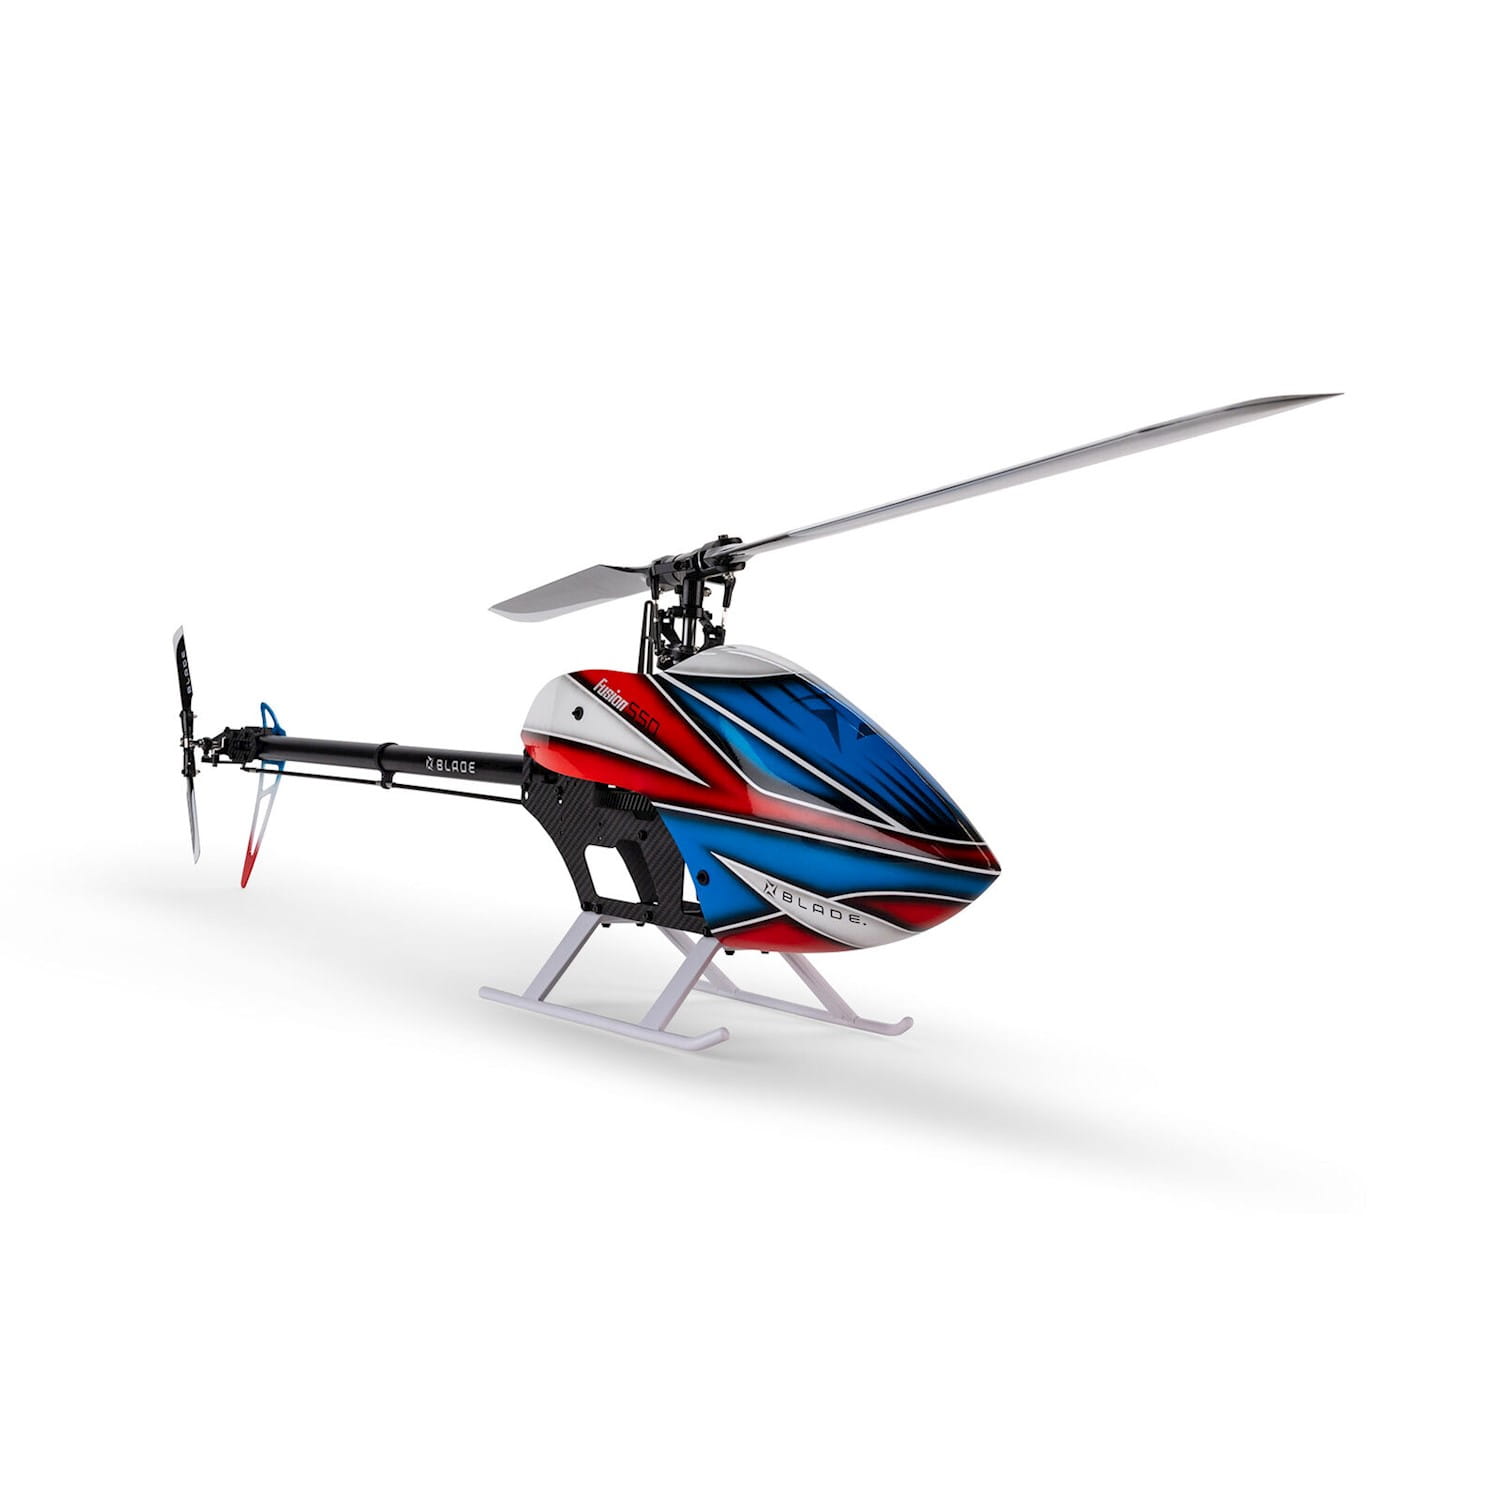 Blade RC Hubschrauber Fusion 550 Quick Build Kit mit Motor und Blätter